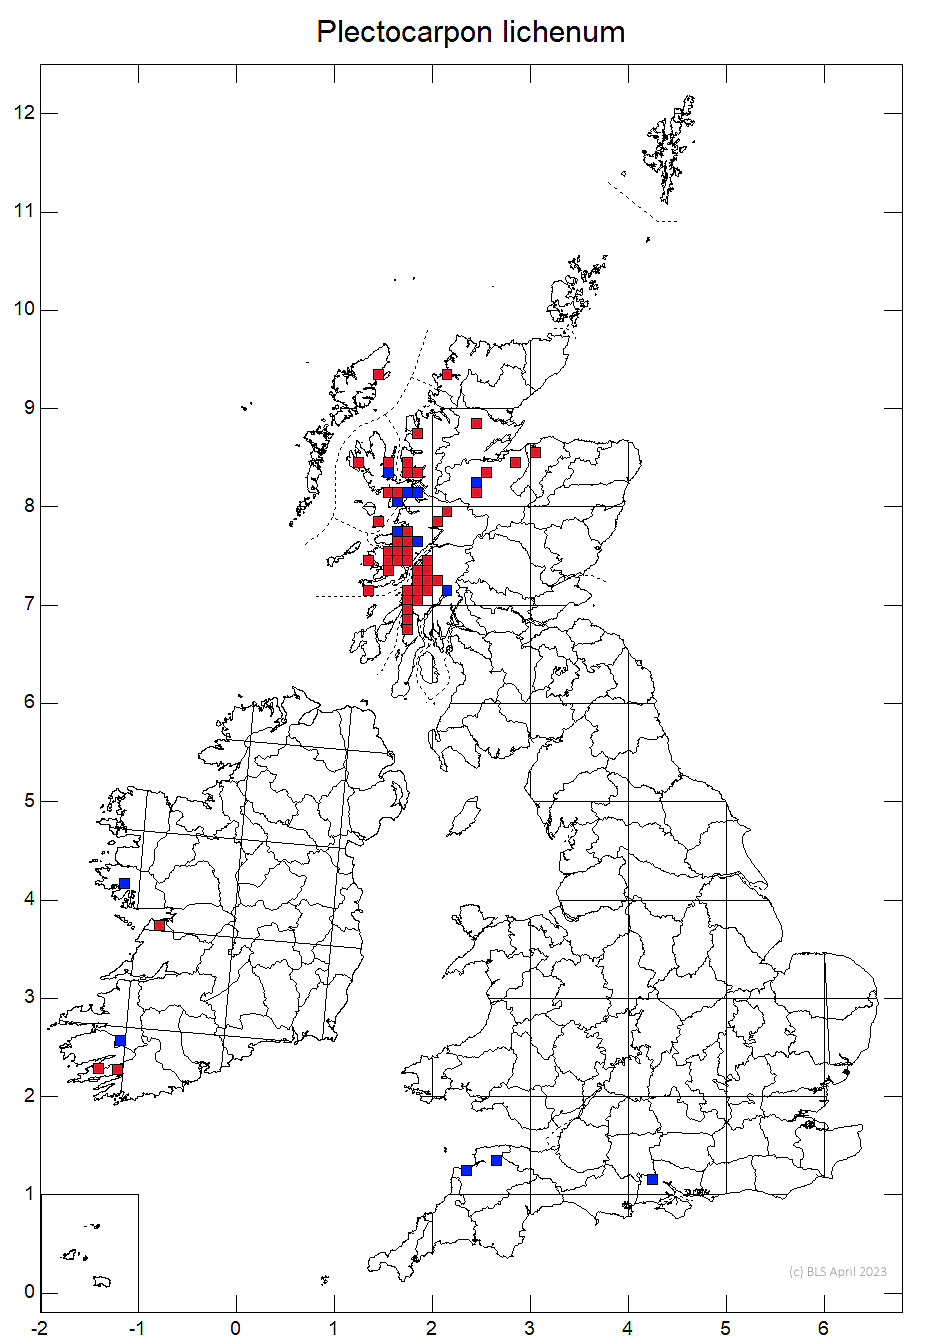 Plectocarpon lichenum 10km sq distribution map